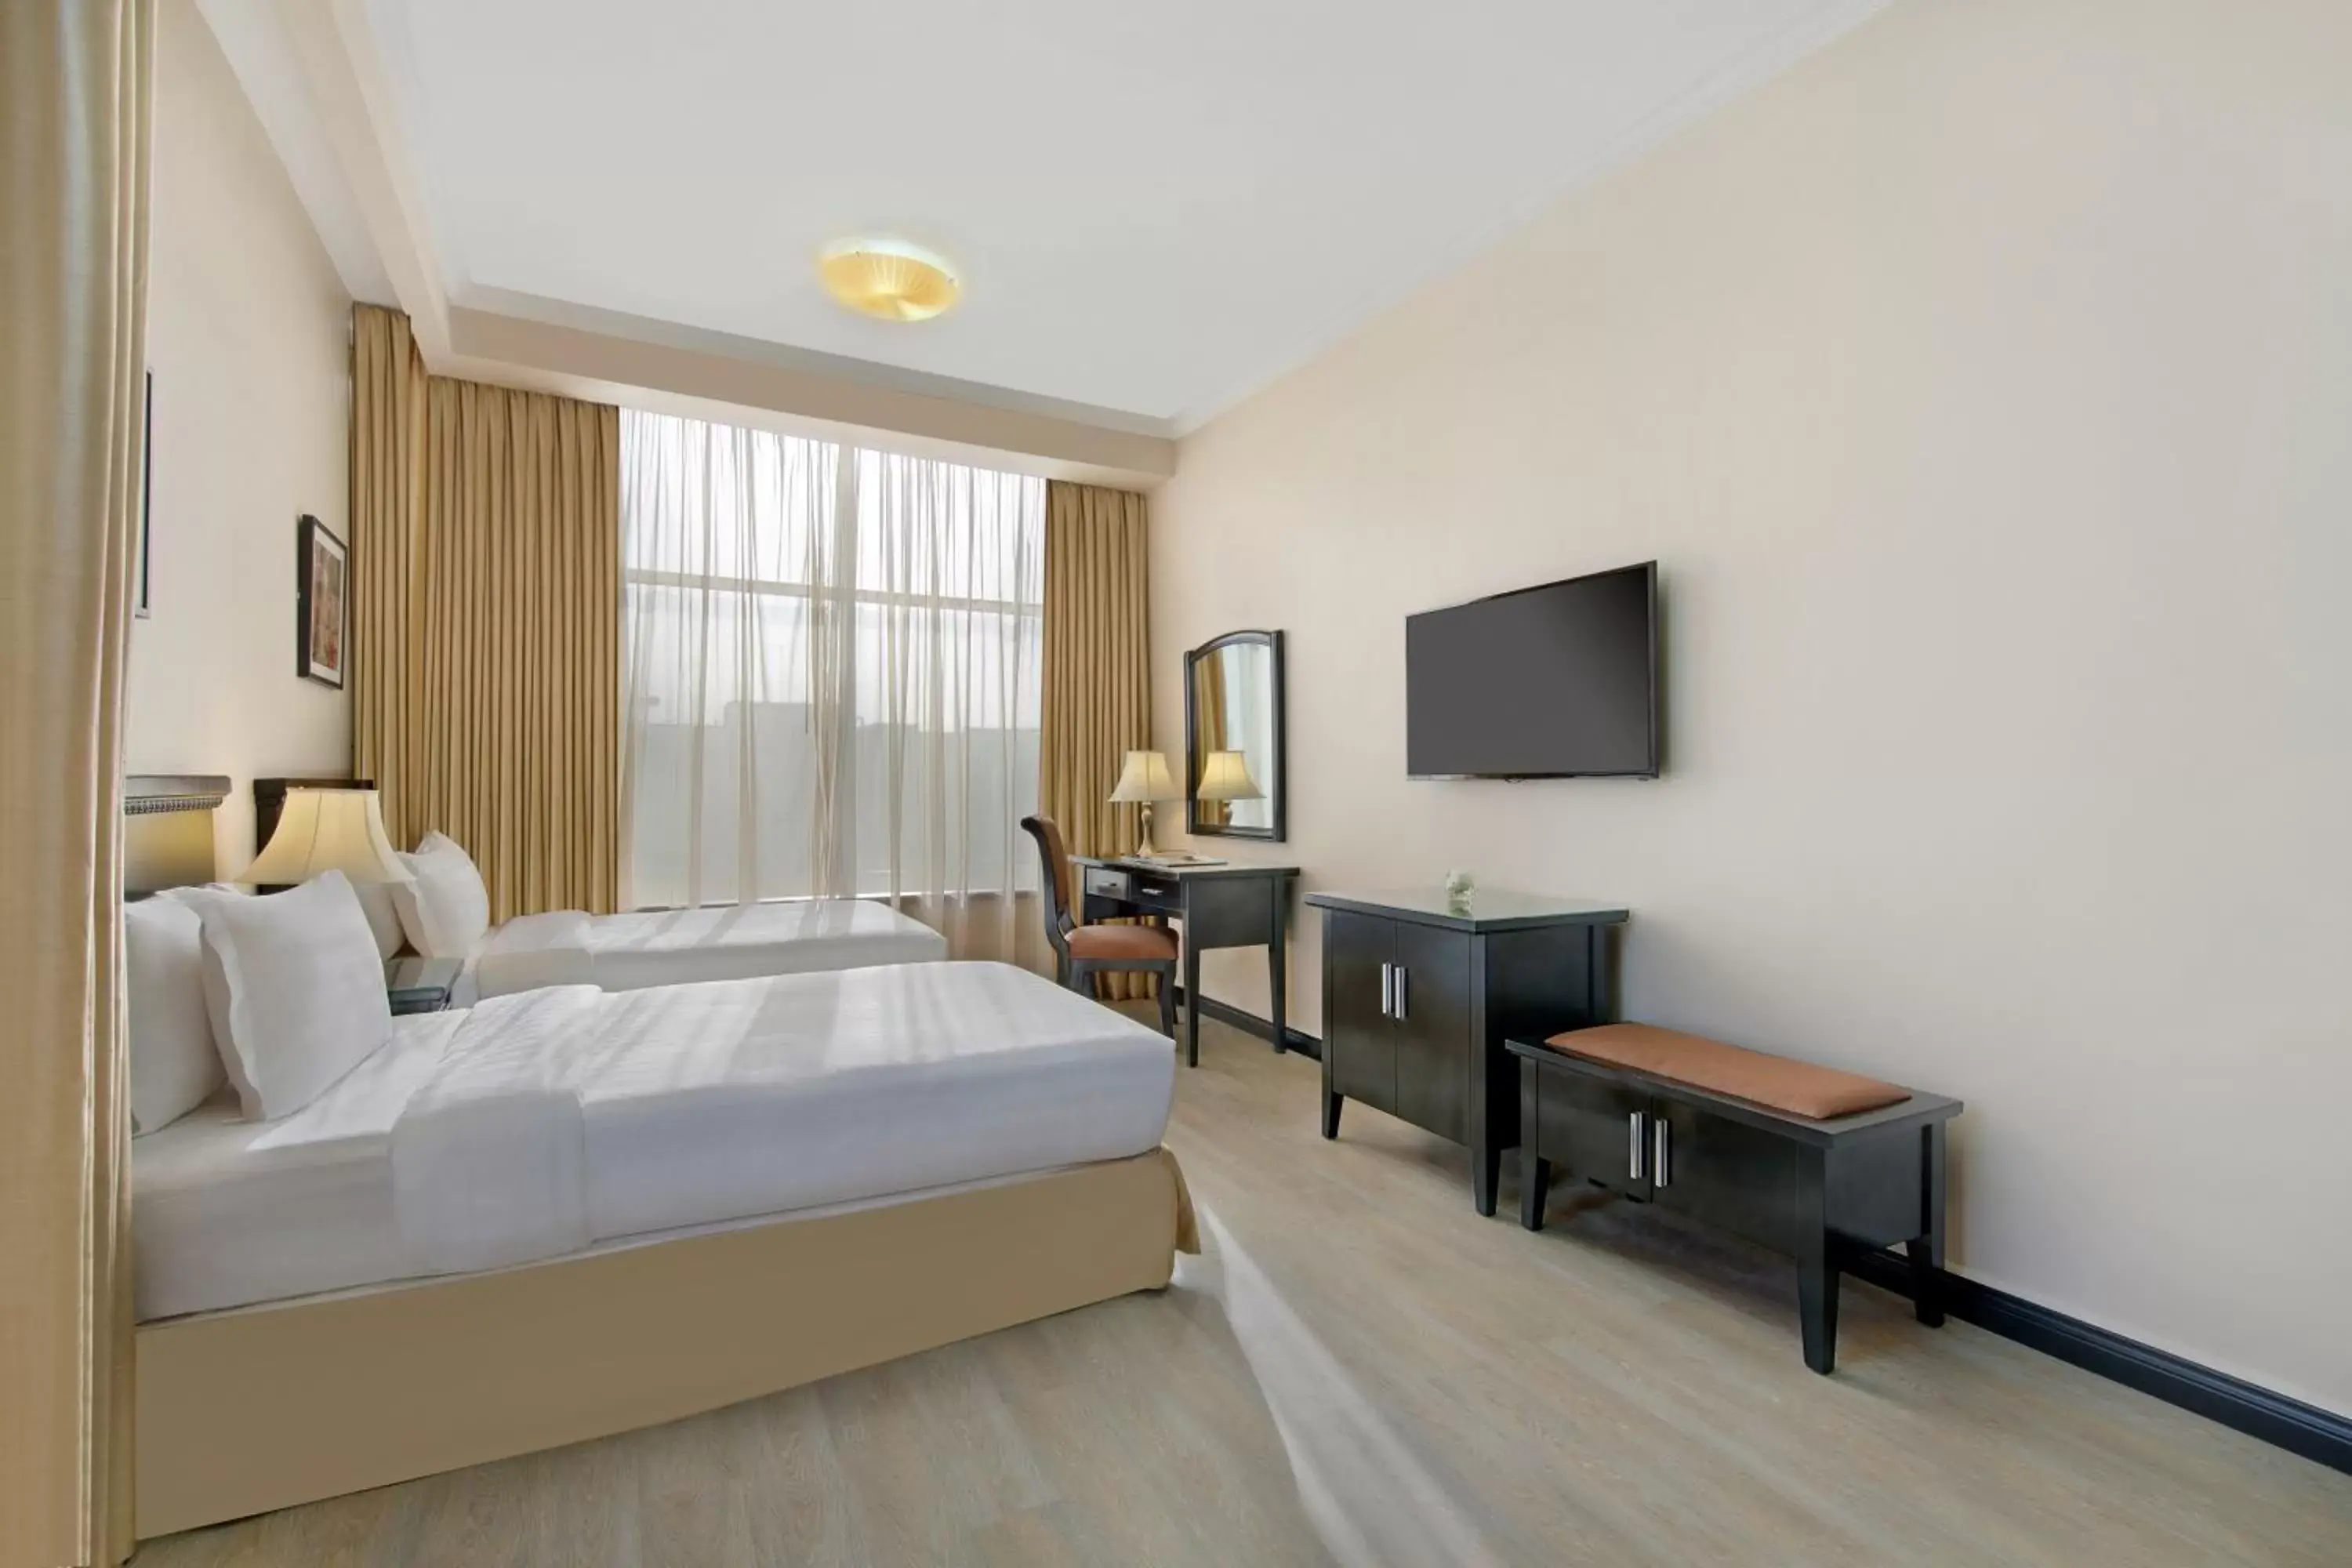 Bedroom in Ezdan Hotels Doha